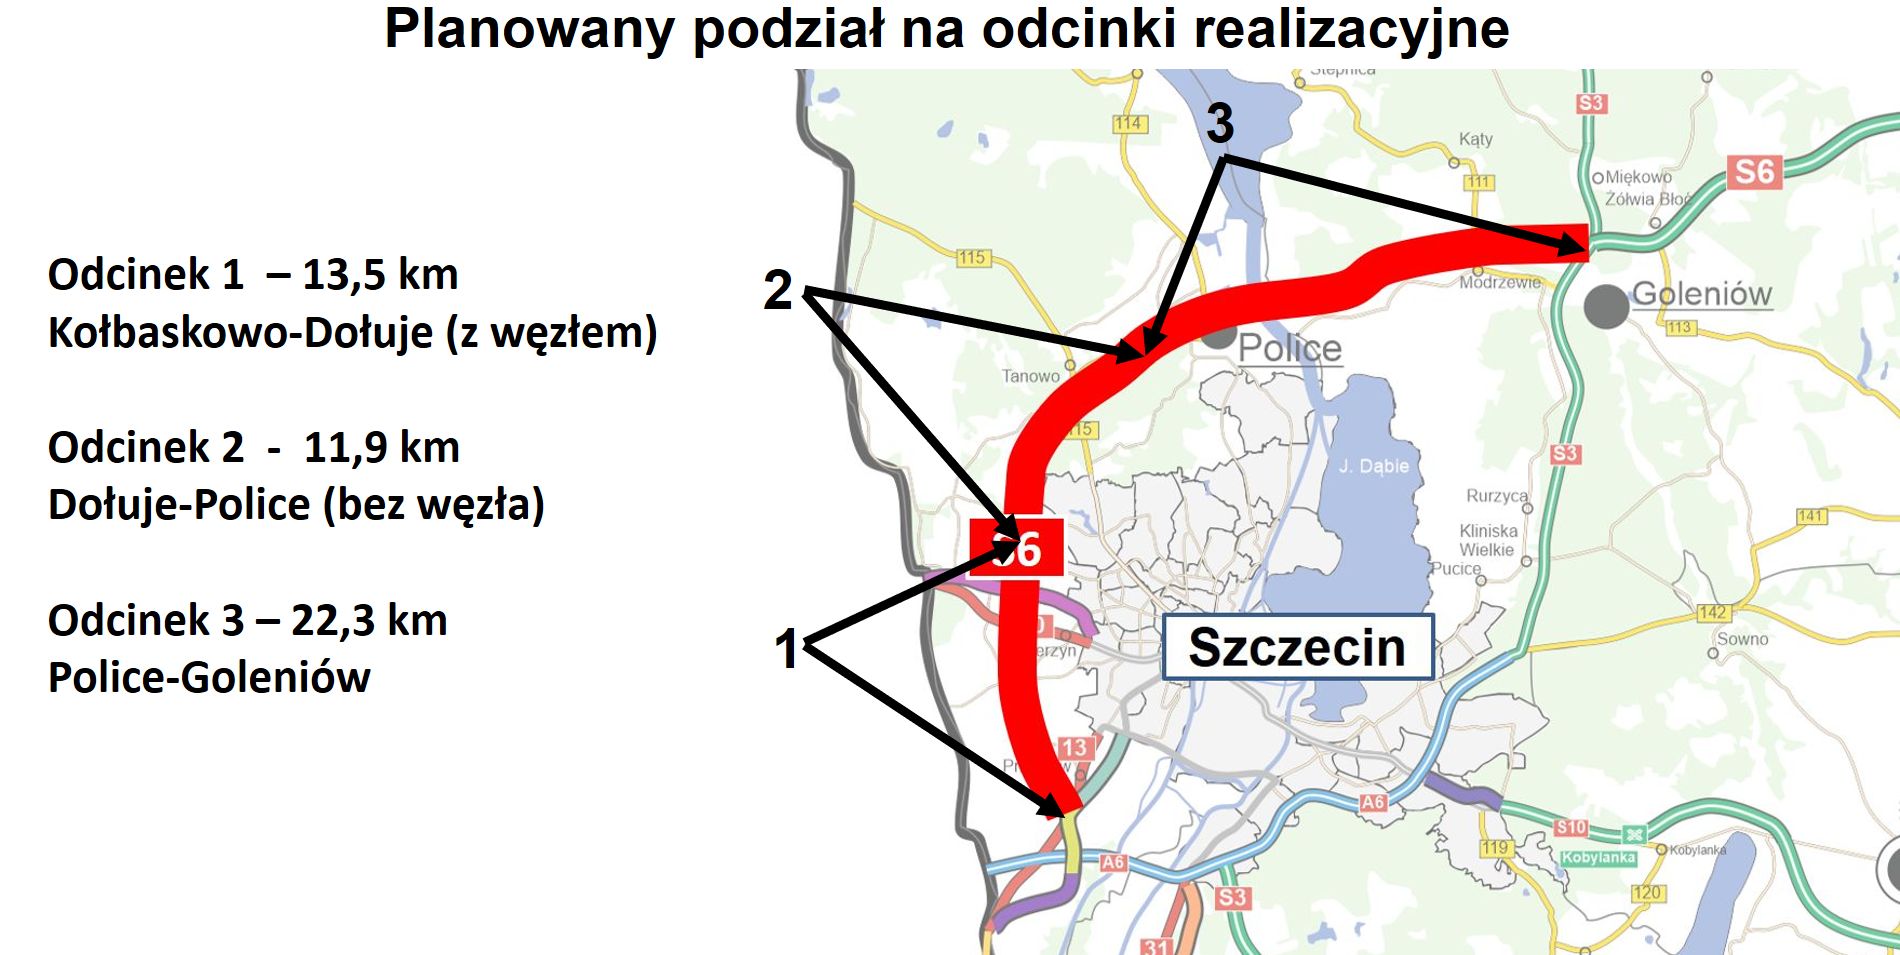 Przebieg Zachodniej Obwodnicy Szczecina w ciągu drogi S6 z podziałem na przyszłe odcinki realizacyjne.